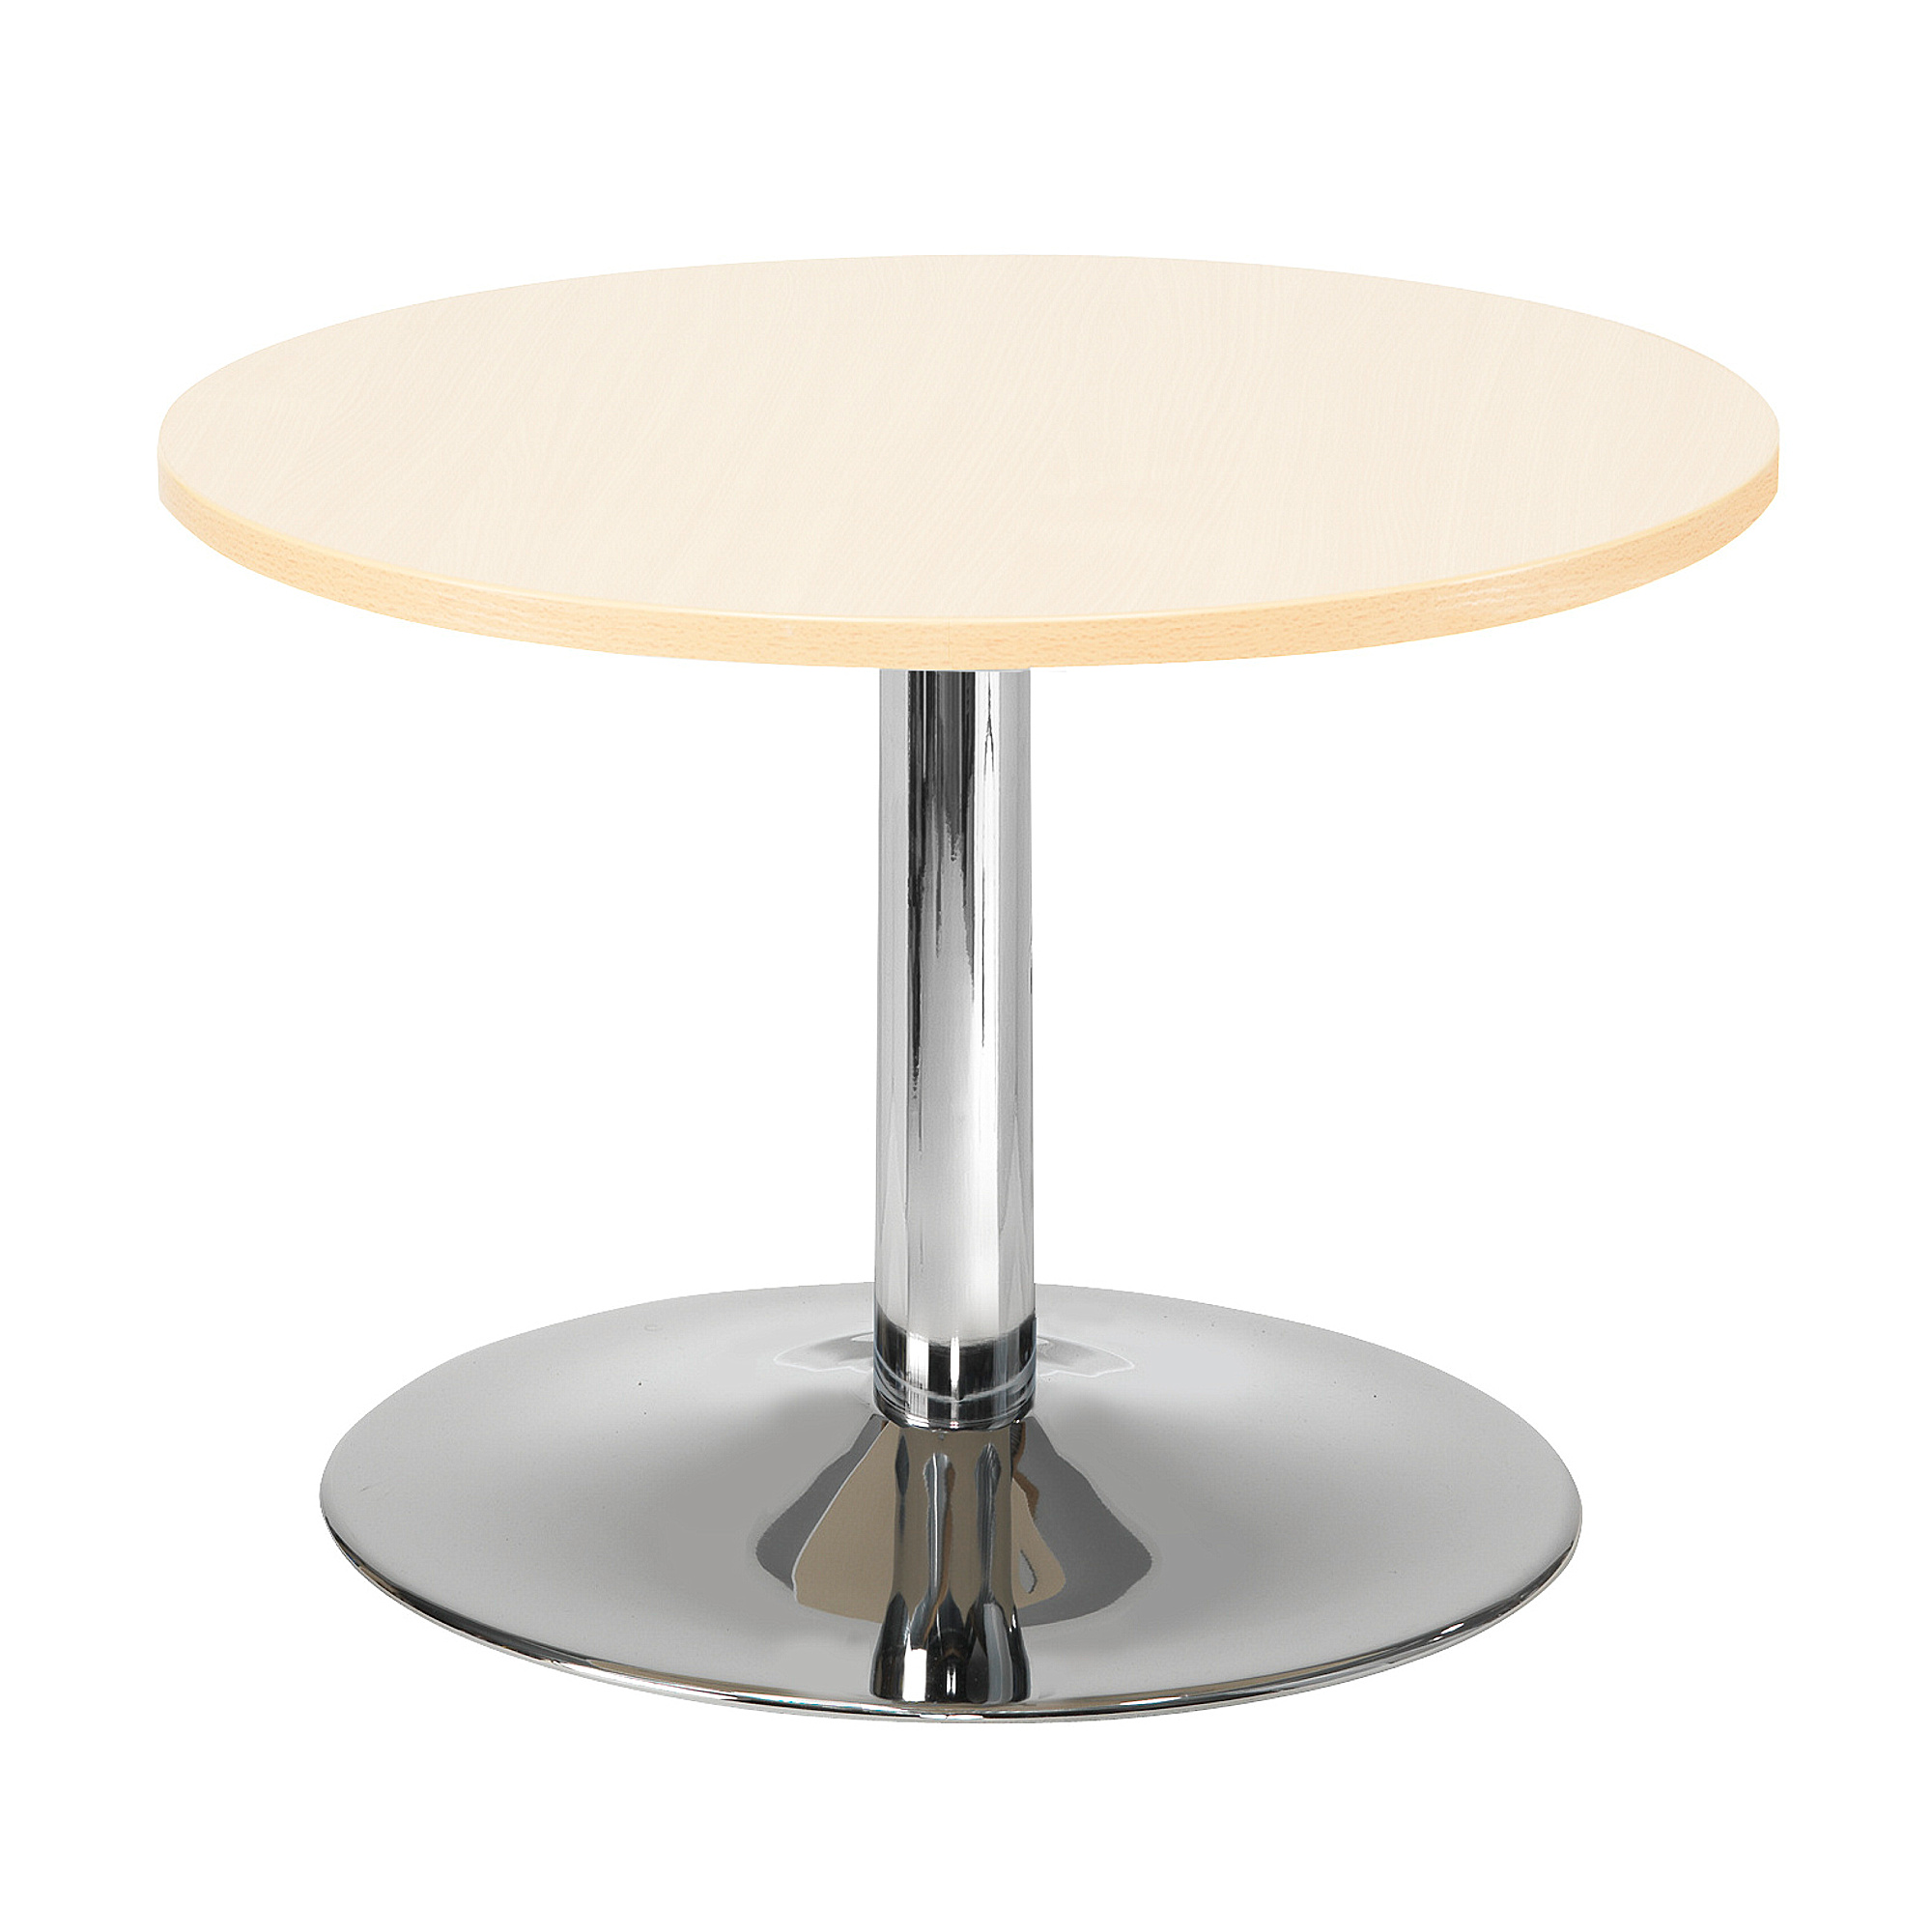 Konferenční stolek MONTY, Ø700 mm, bříza/chrom